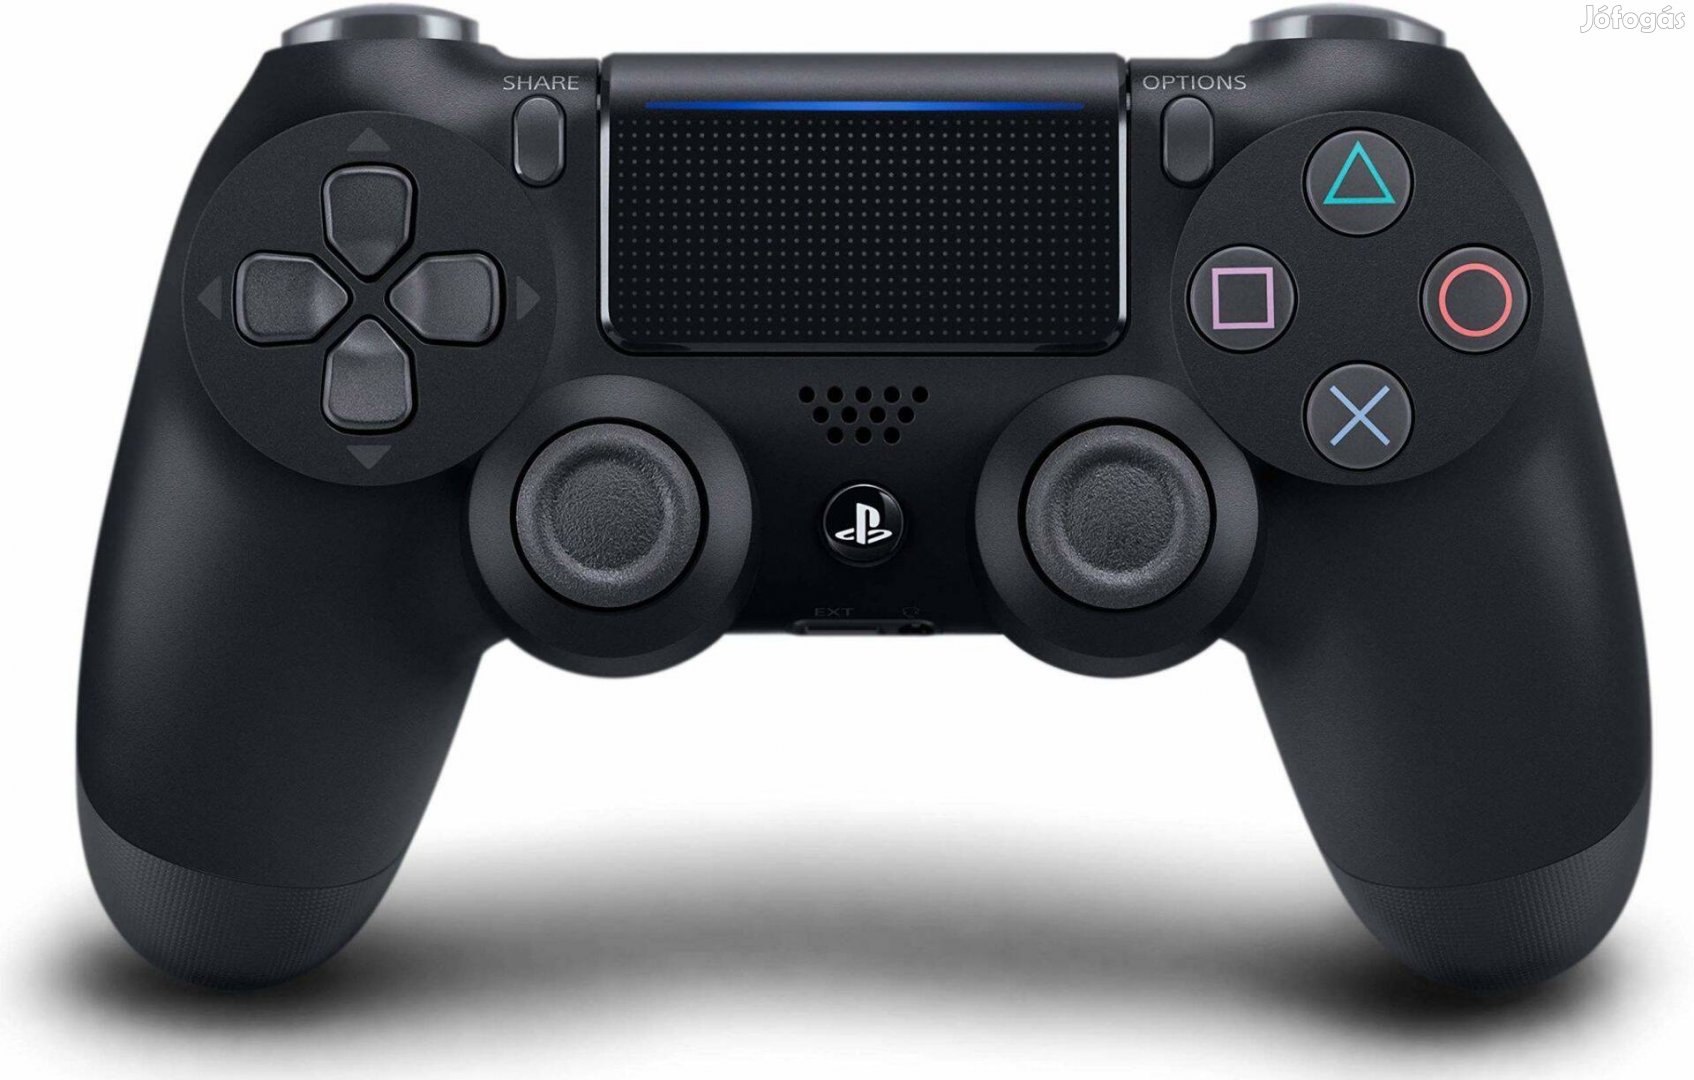 Használt Sony Playstation 4 PS4 kontrollerek a Playbox Co-tól